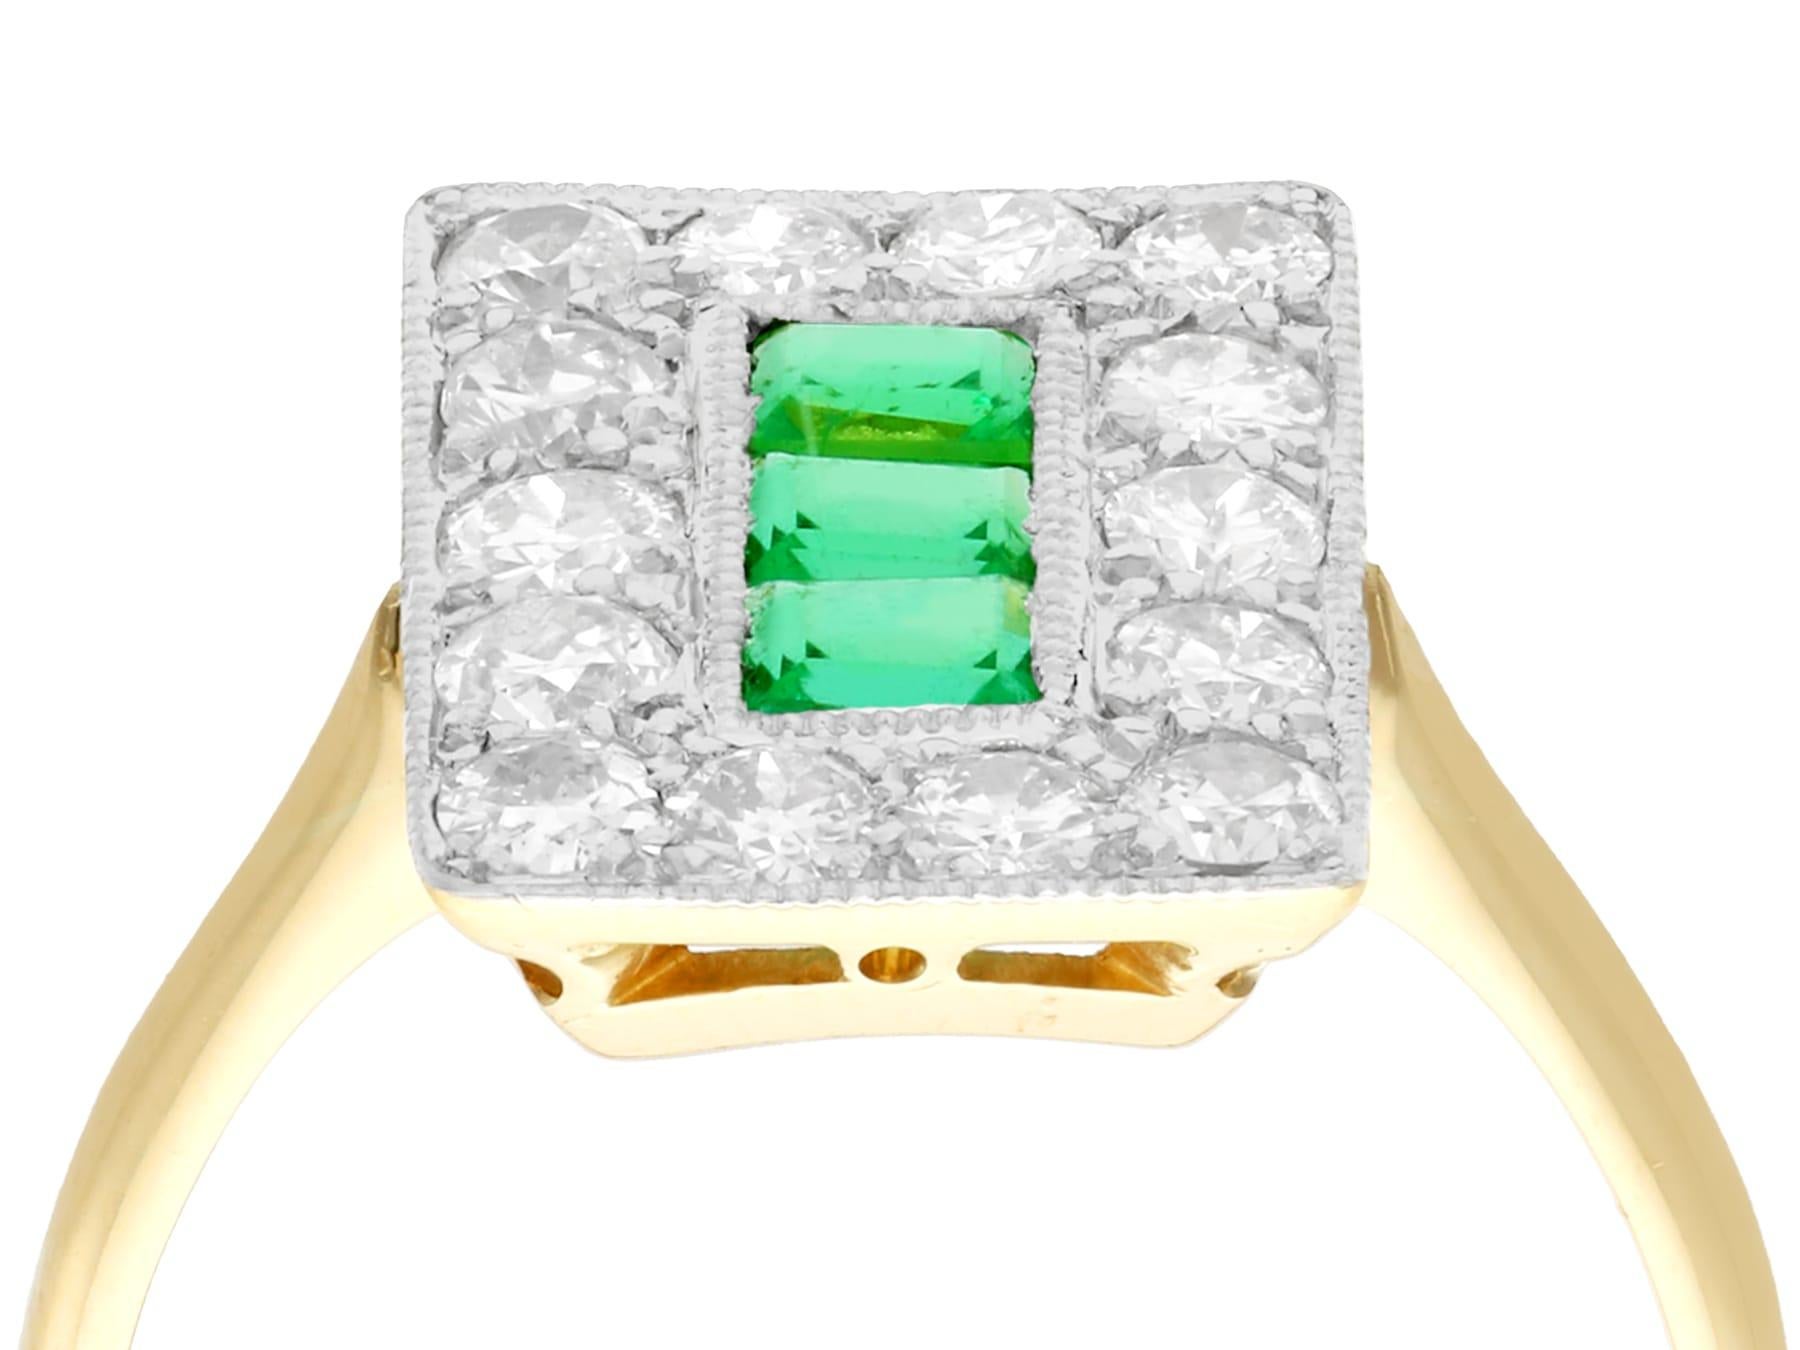 Ein feiner und beeindruckender Ring mit einem natürlichen Smaragd von 0,57 Karat und einem Diamanten von 1,33 Karat in 18 Karat Gelbgold und Platin; Teil unseres vielfältigen Angebots an Smaragdschmuck.

Dieser feine und beeindruckende antike